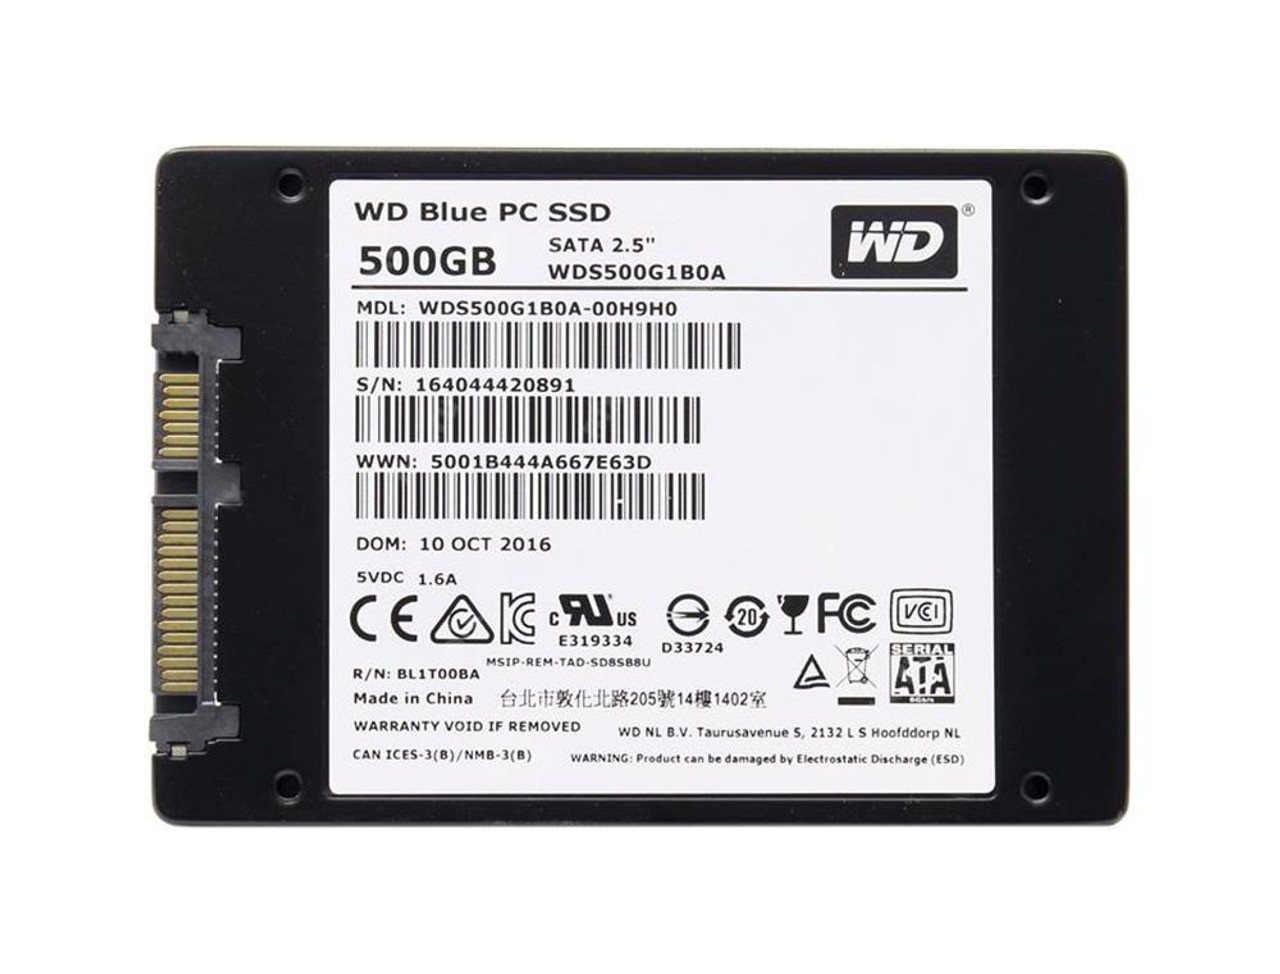 WDS500G1B0A Digital SATA 6.0 Gbps 500GB Solid State Drive